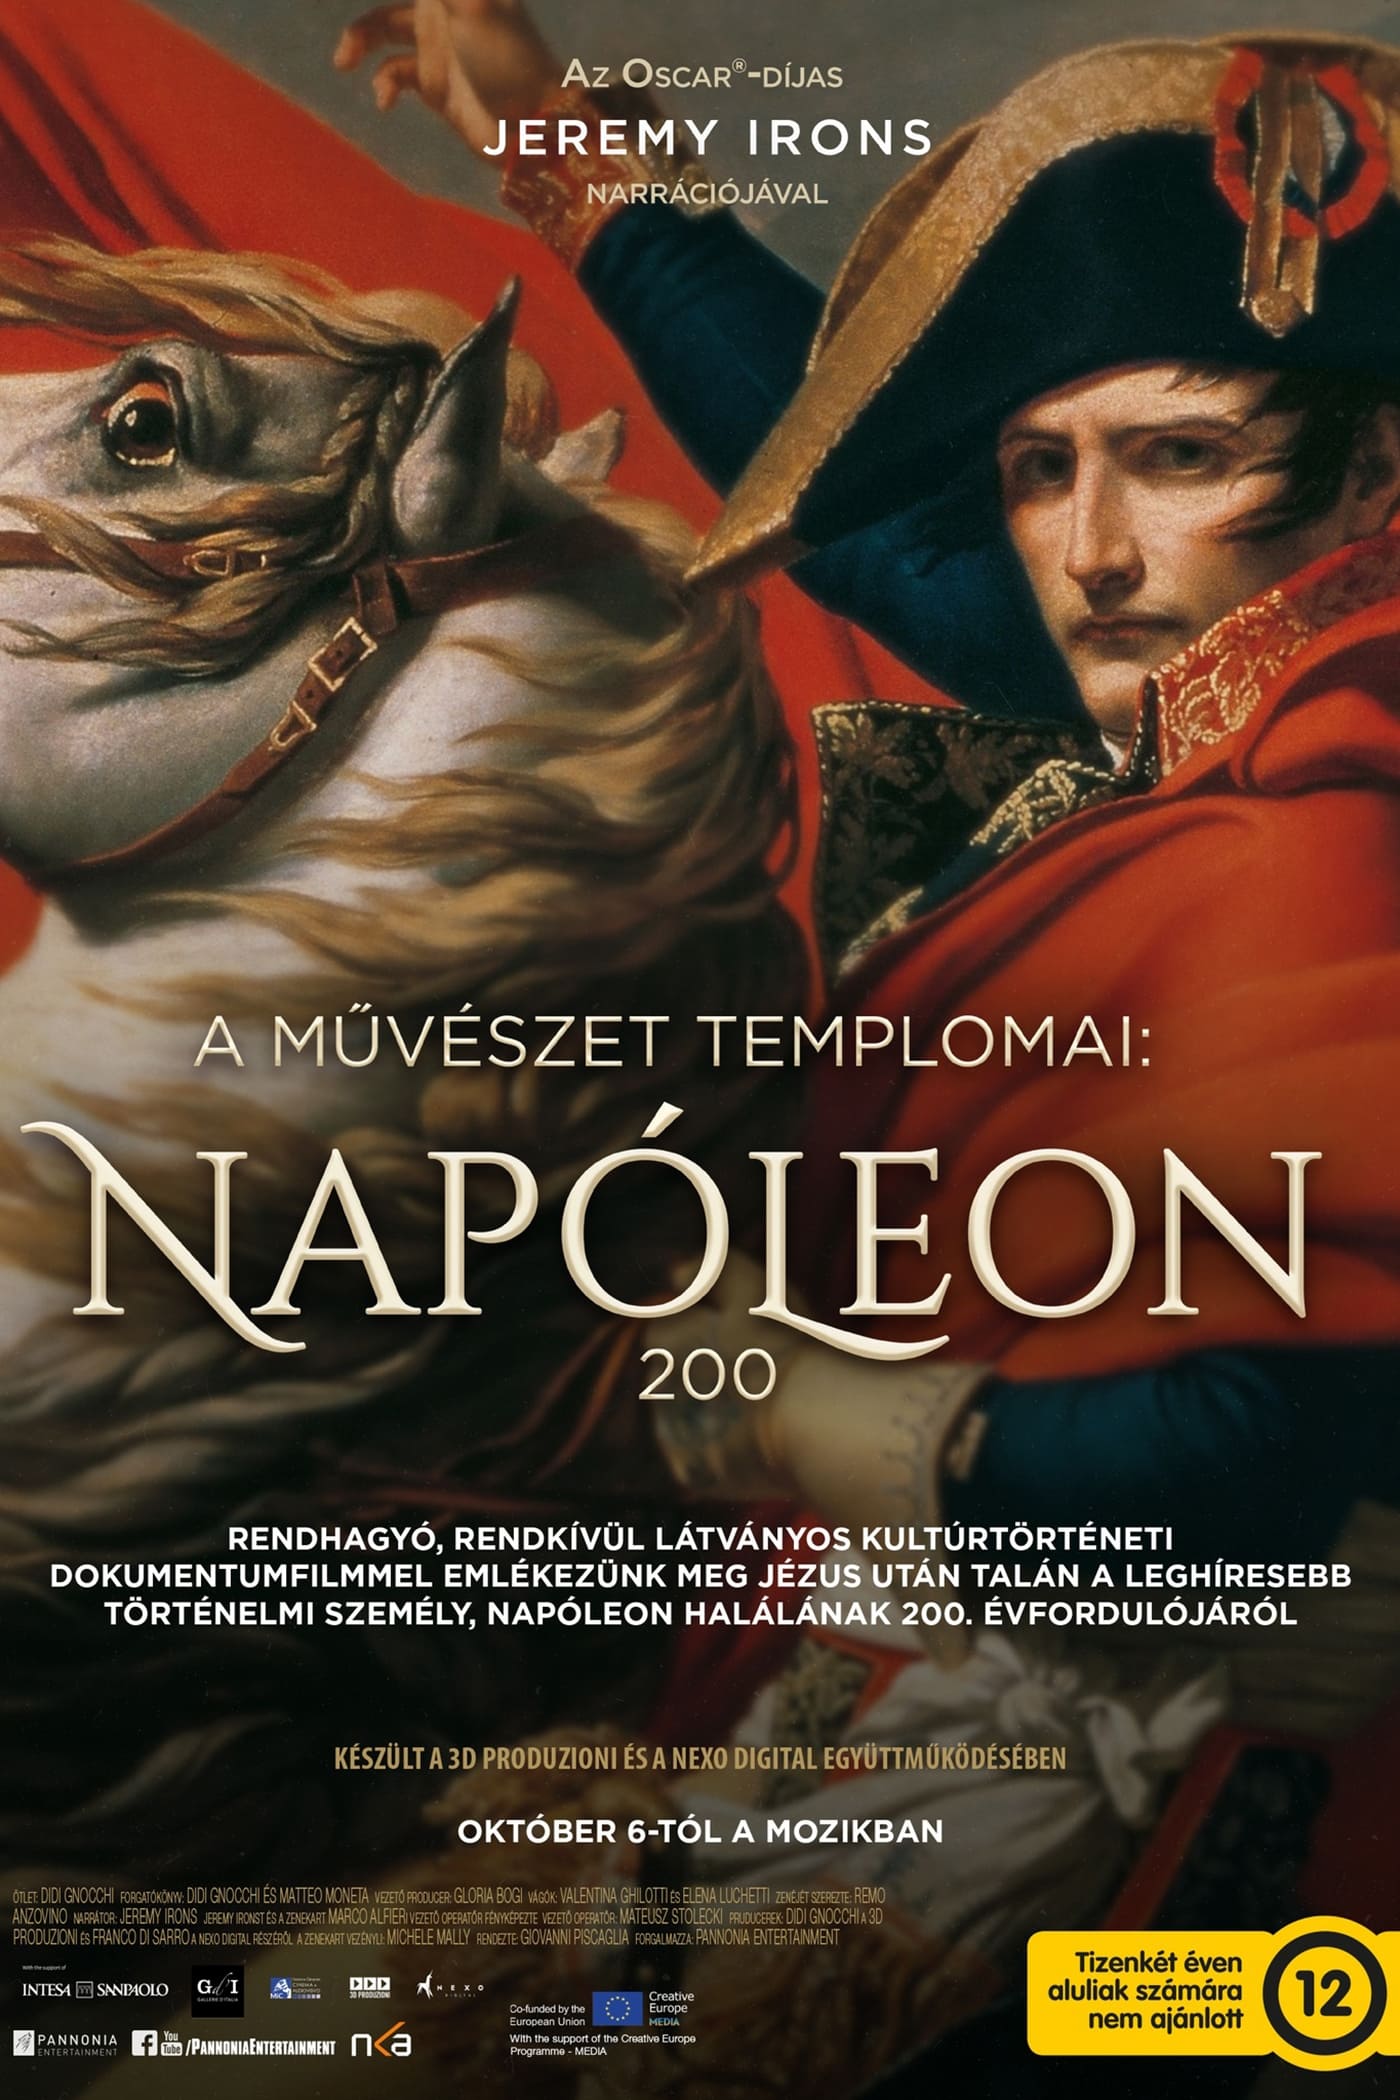 Caratula de Napoleon: In the Name of Art (Napoleón, en el nombre del arte) 